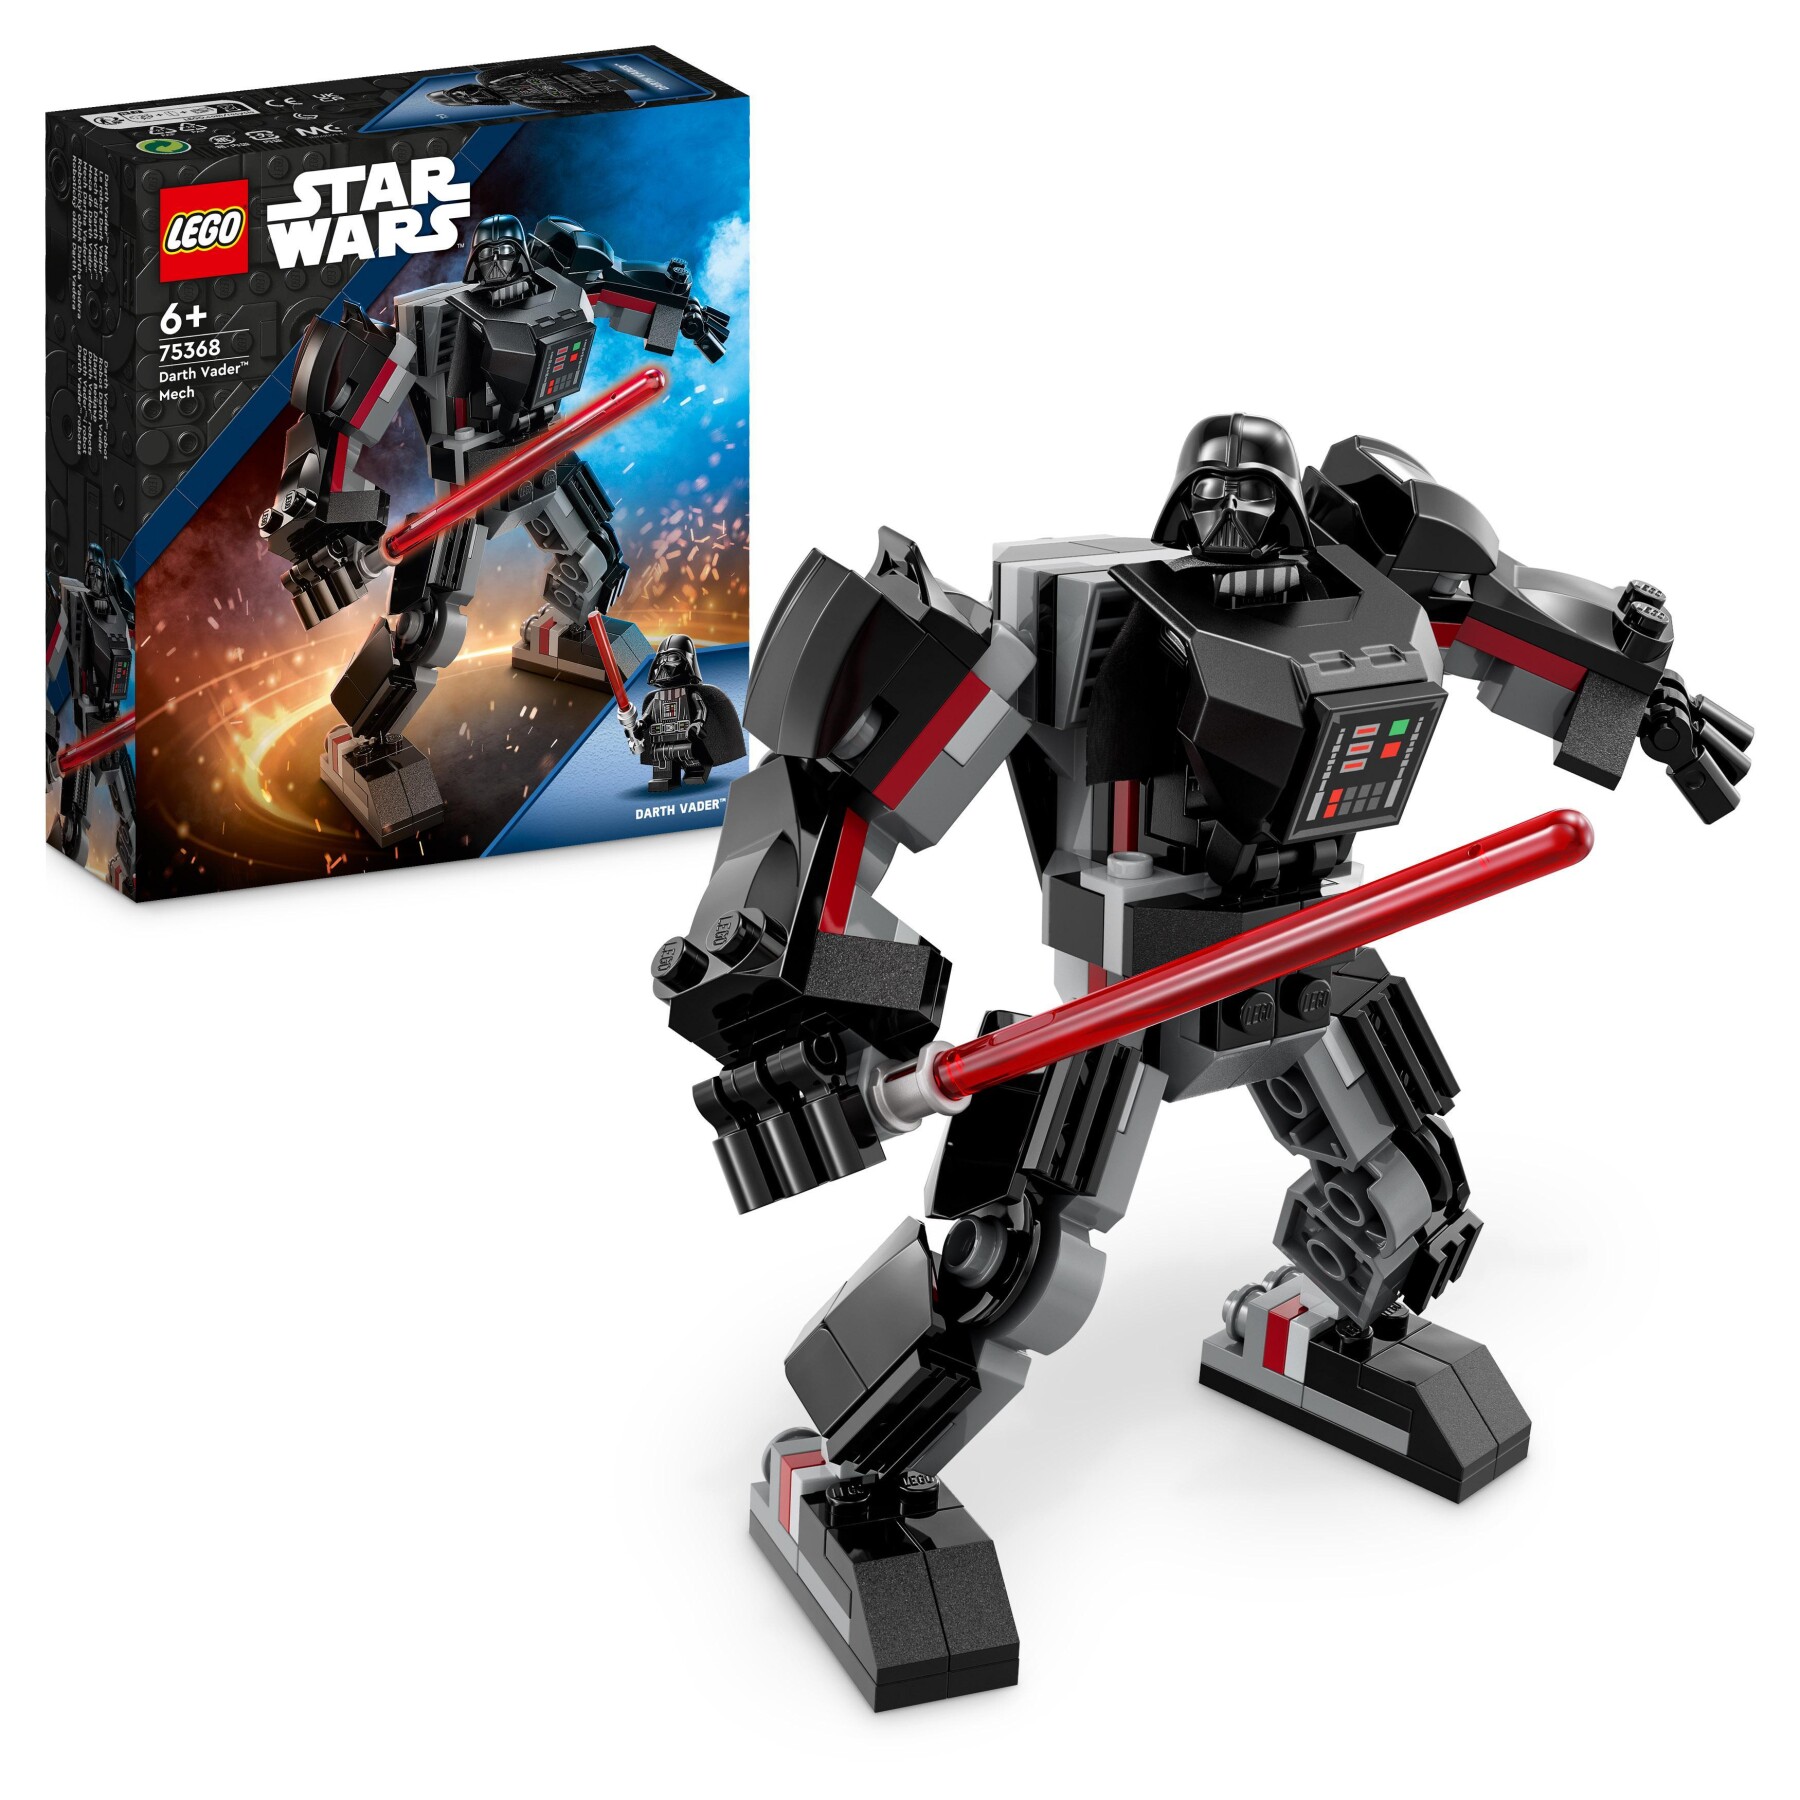 Lego star wars 75368 mech di darth vader, action figure snodabile con minifigure e spada laser, giochi per bambini di 6+ anni - LEGO STAR WARS, Star Wars